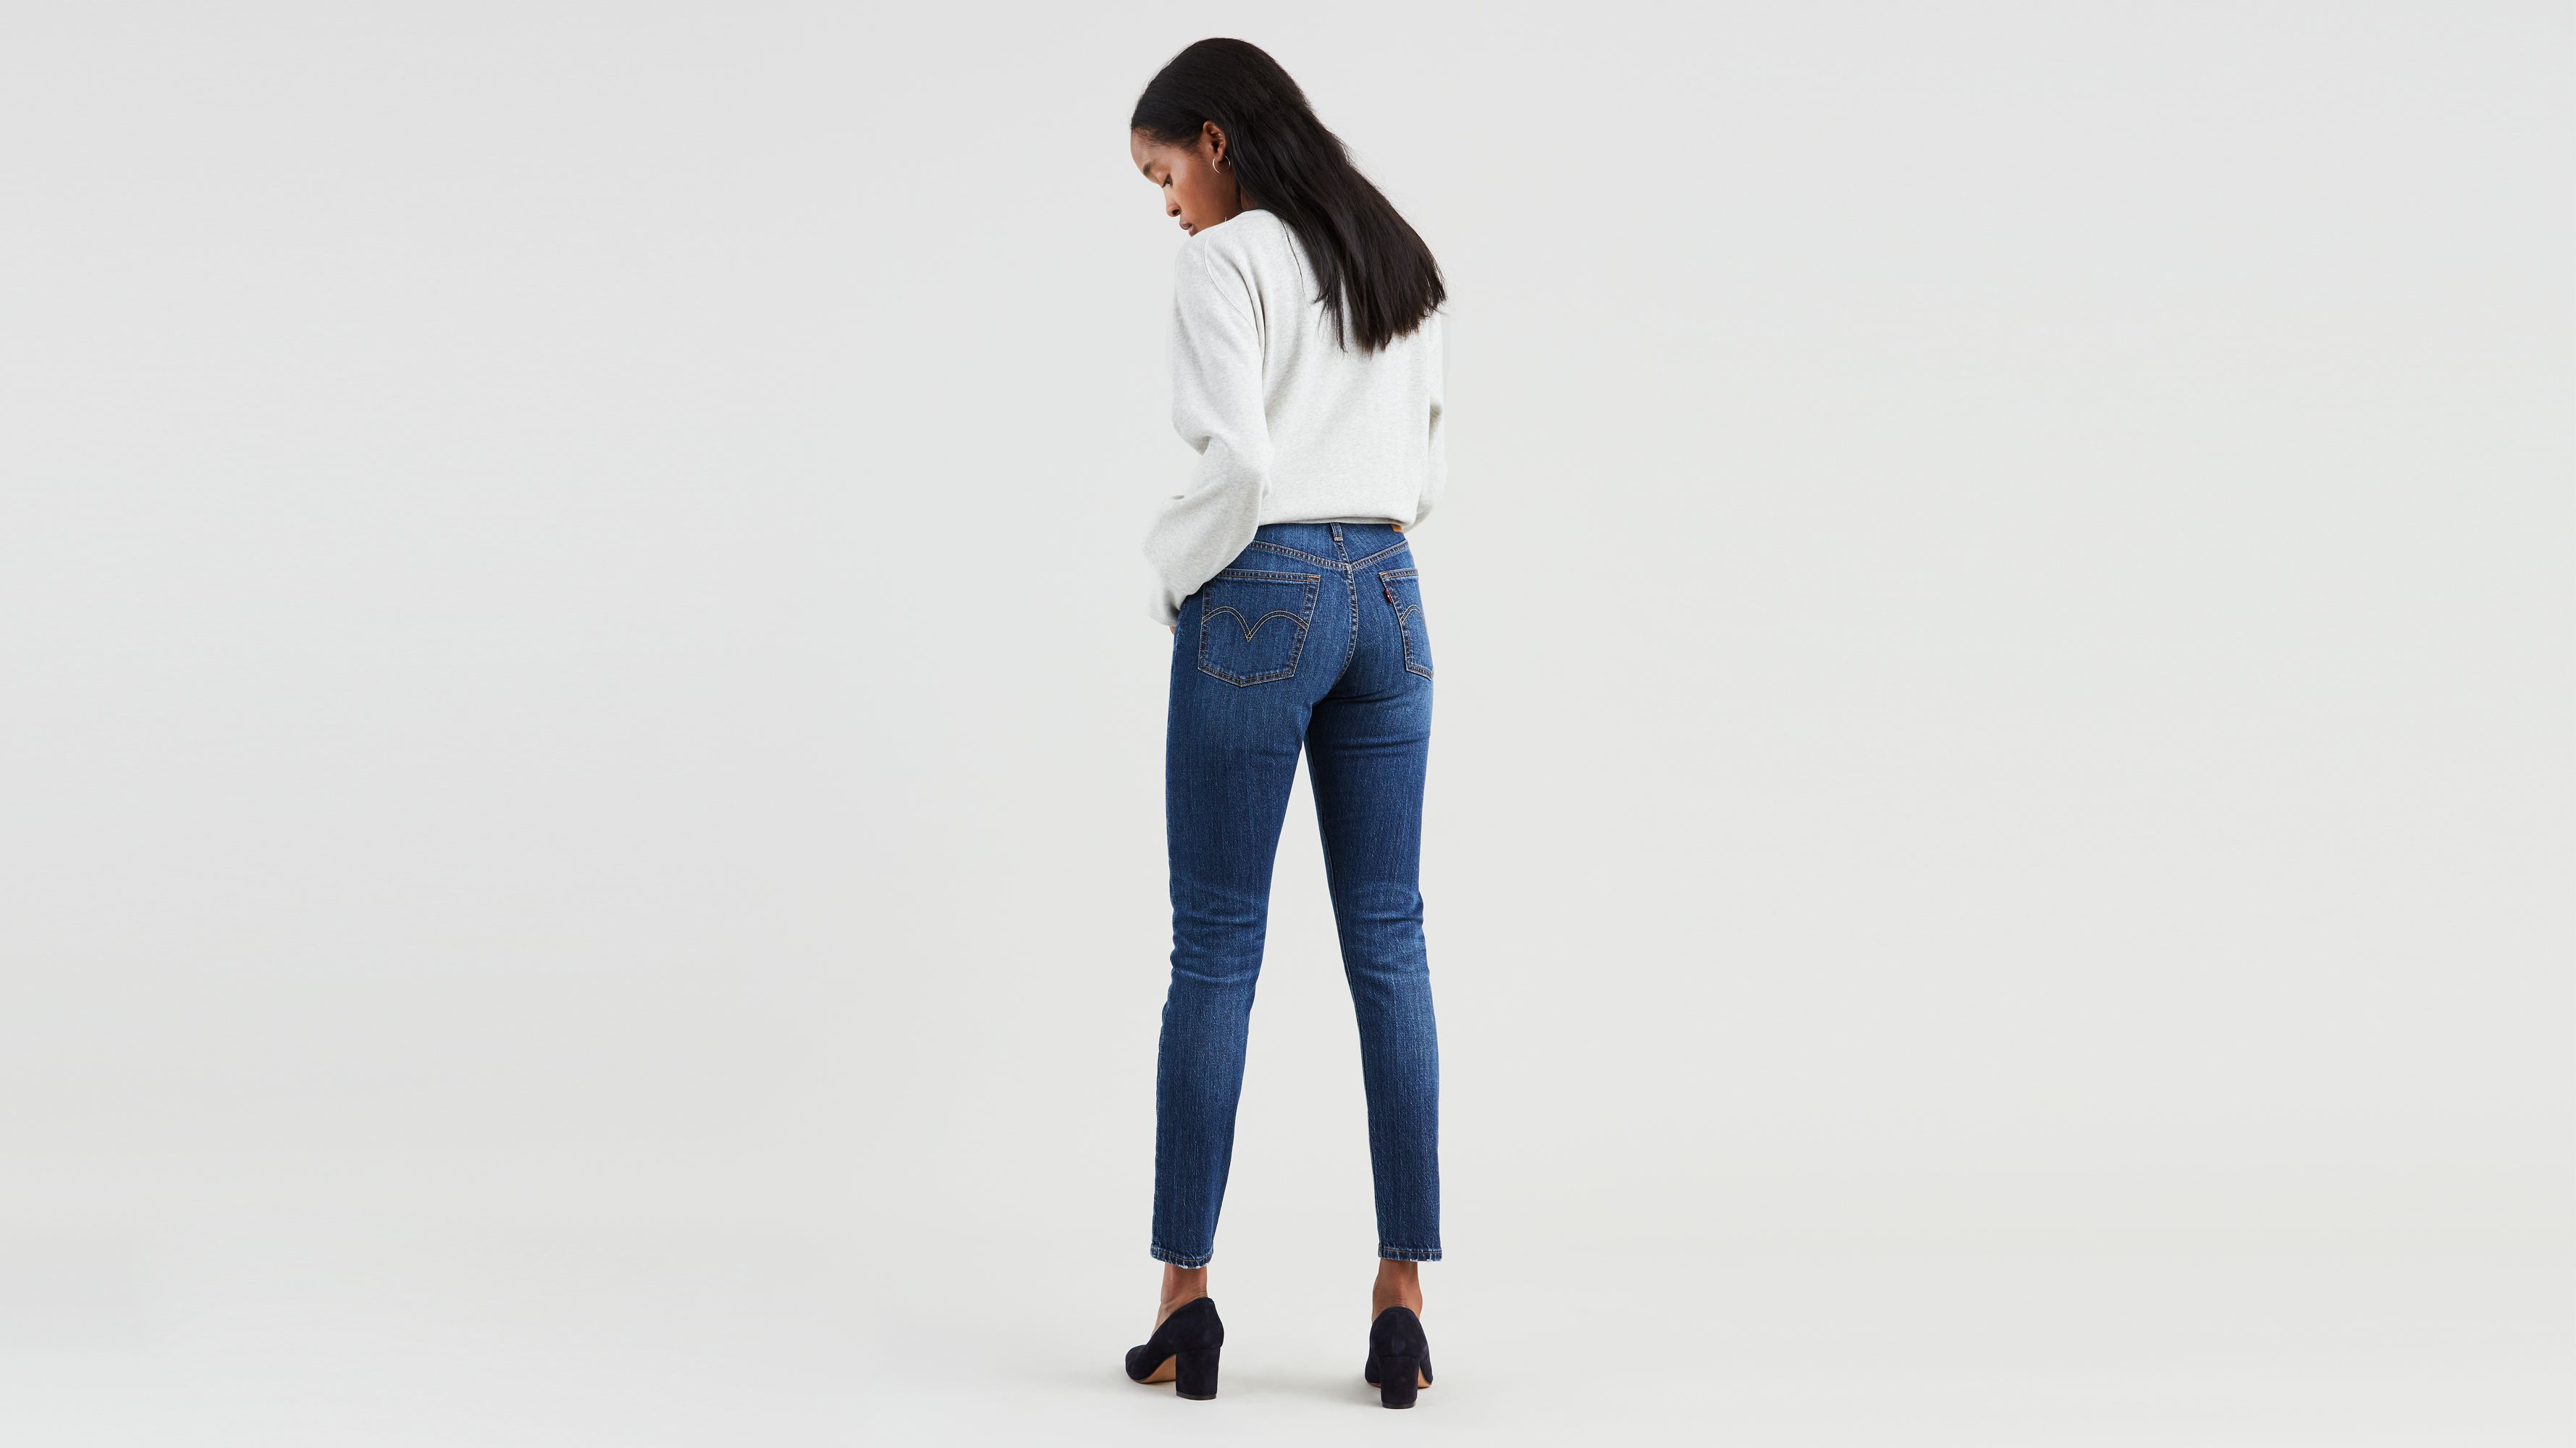 women's levi's stretch skinny jeans